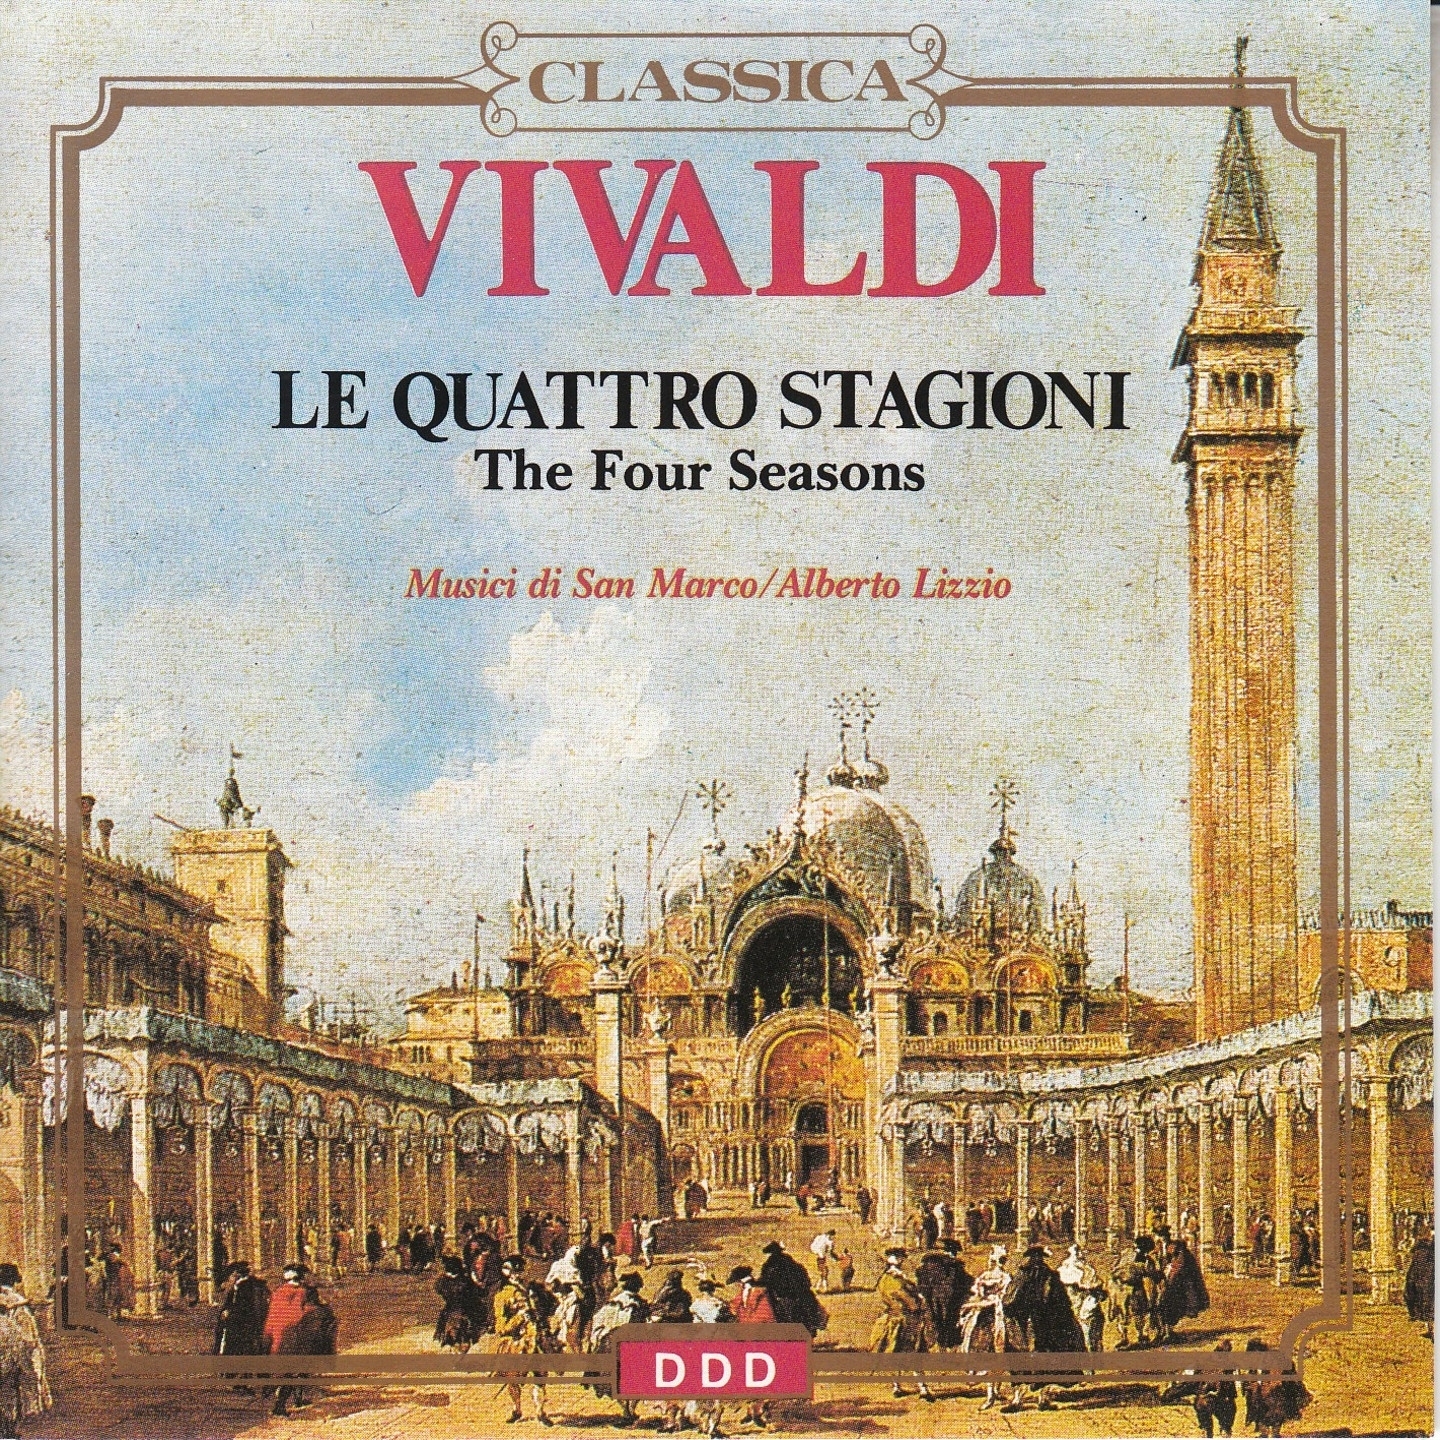 Concerto for 4 Violins and Cello in B Minor, Op. 3, RV 580: III. Adagio - Largo - Allegro